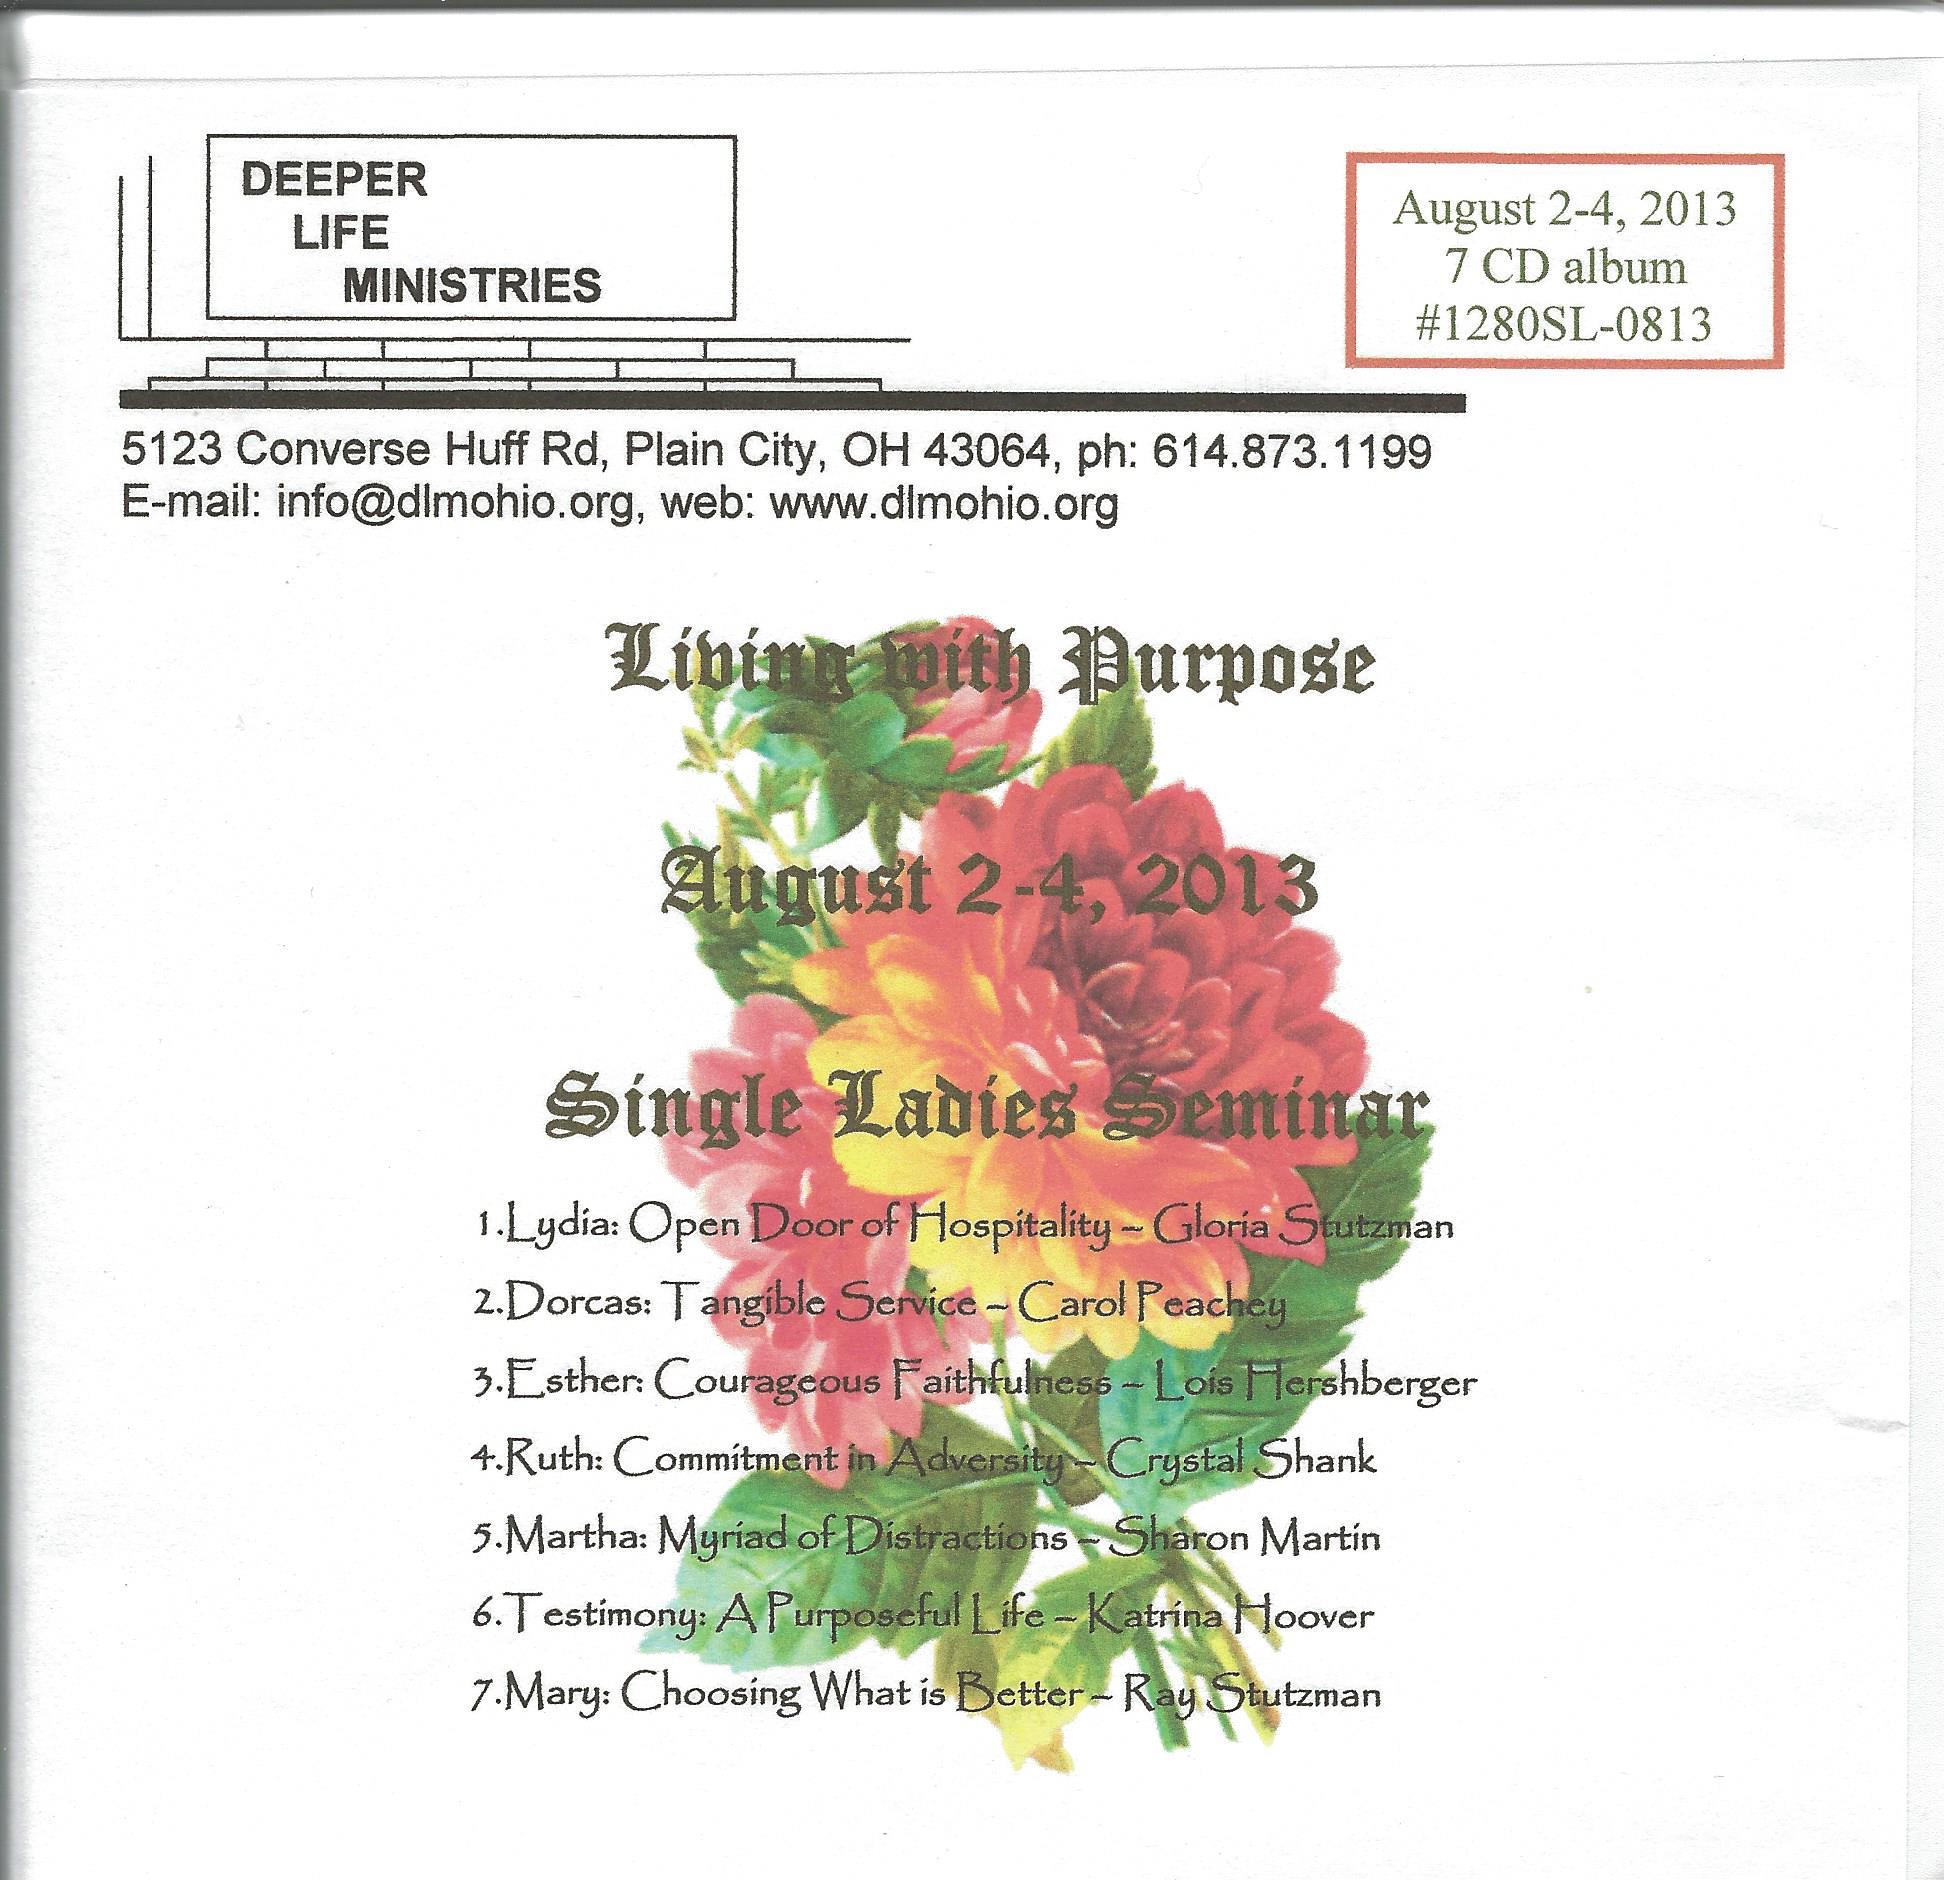 SINGLE LADIES SEMINAR 2013 7 CD album